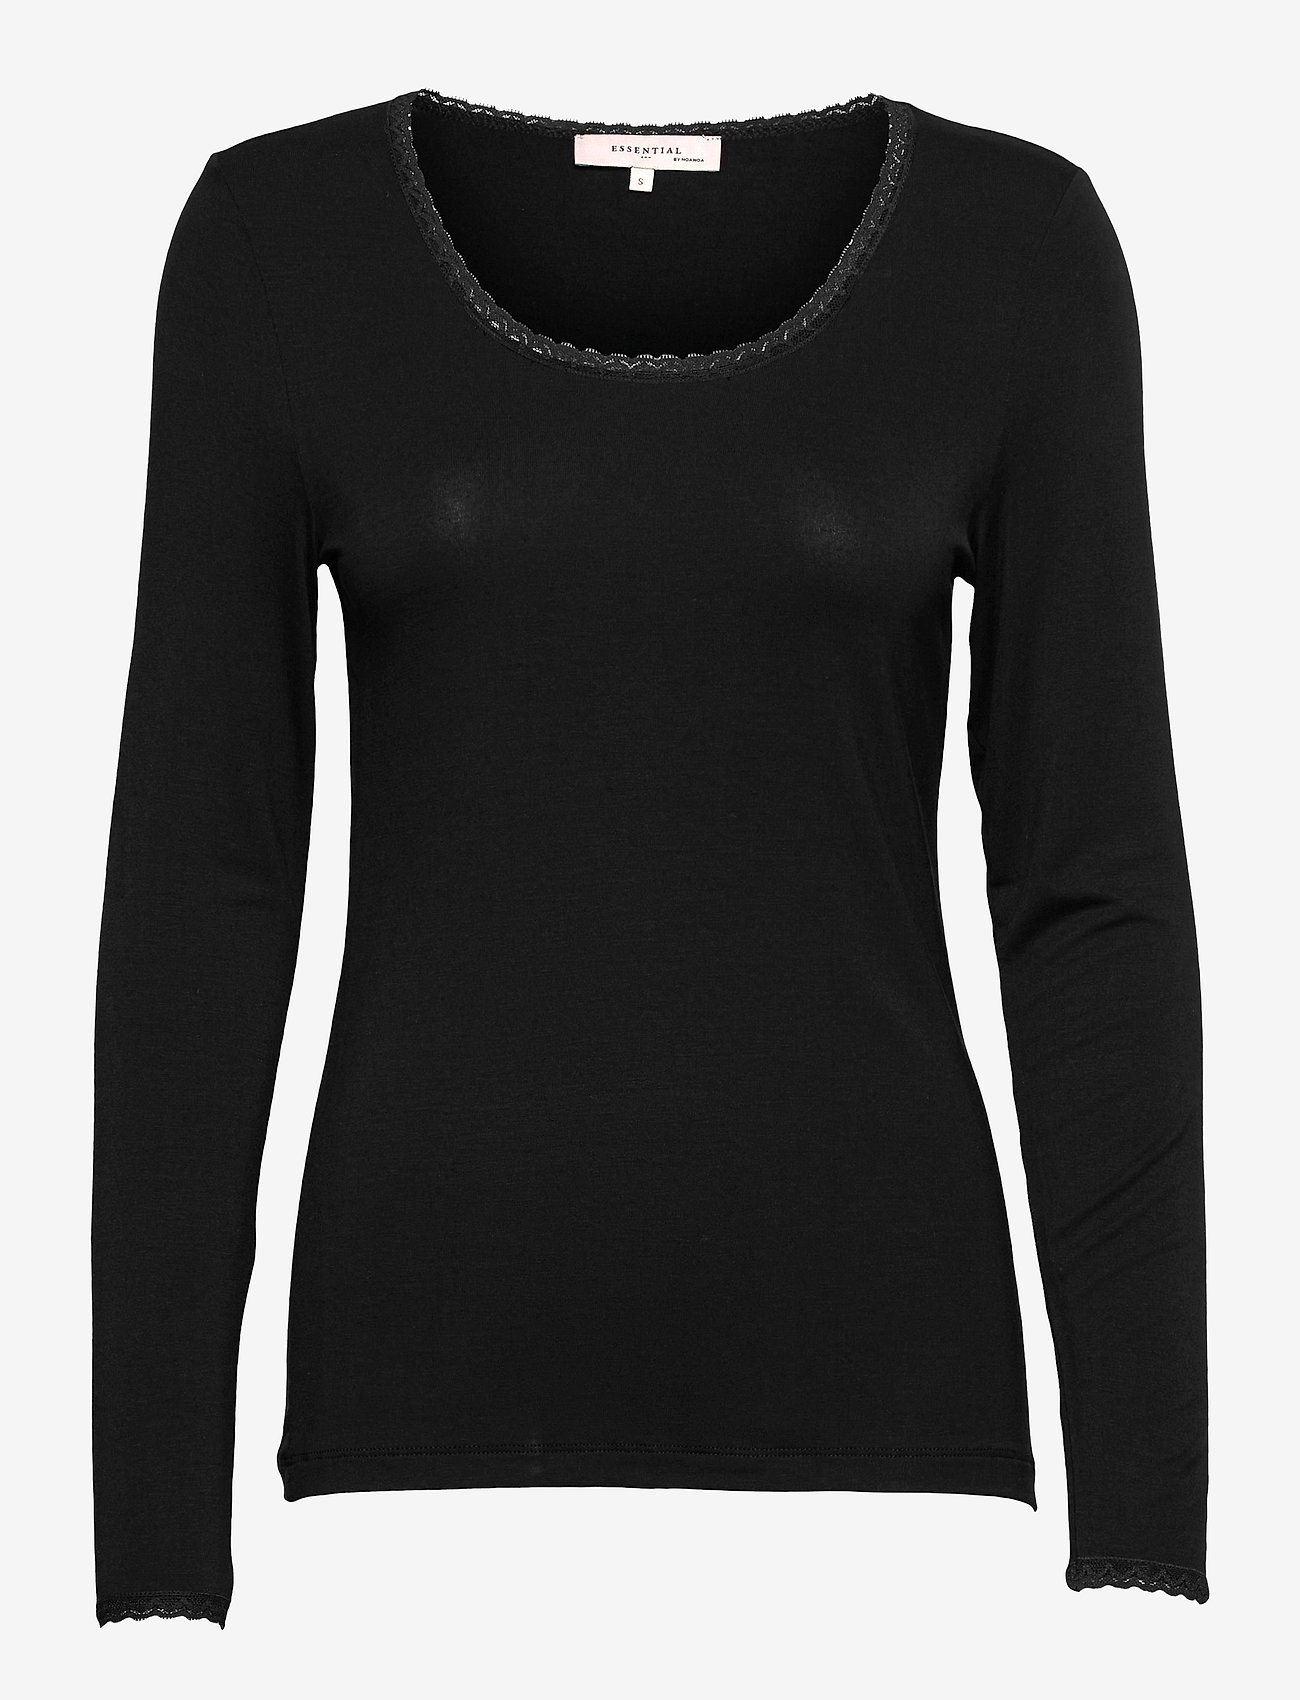 Noa Noa - AlmaNN T-Shirt Long Sleeve - zemākās cenas - black - 0